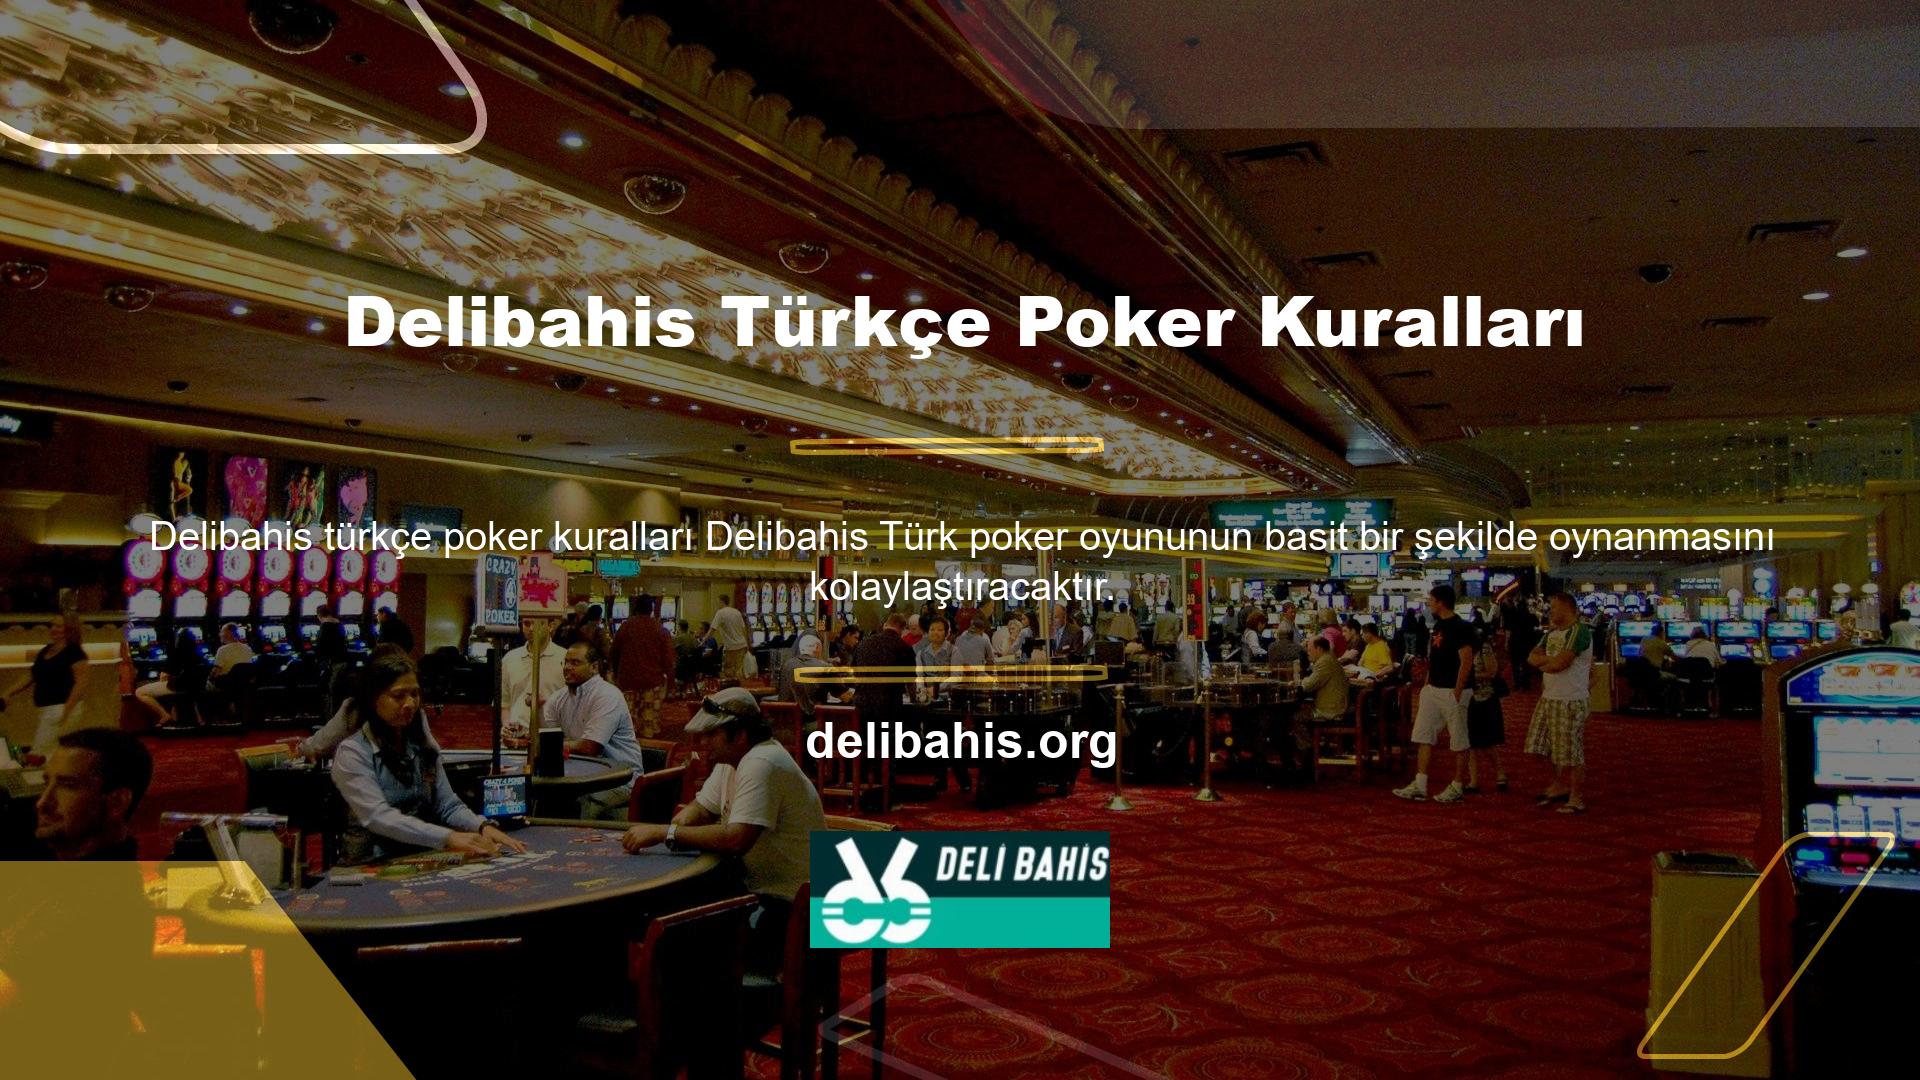 Delibahis web sitesinin geleneksel Türk pokerine yönelik kuralları vardır